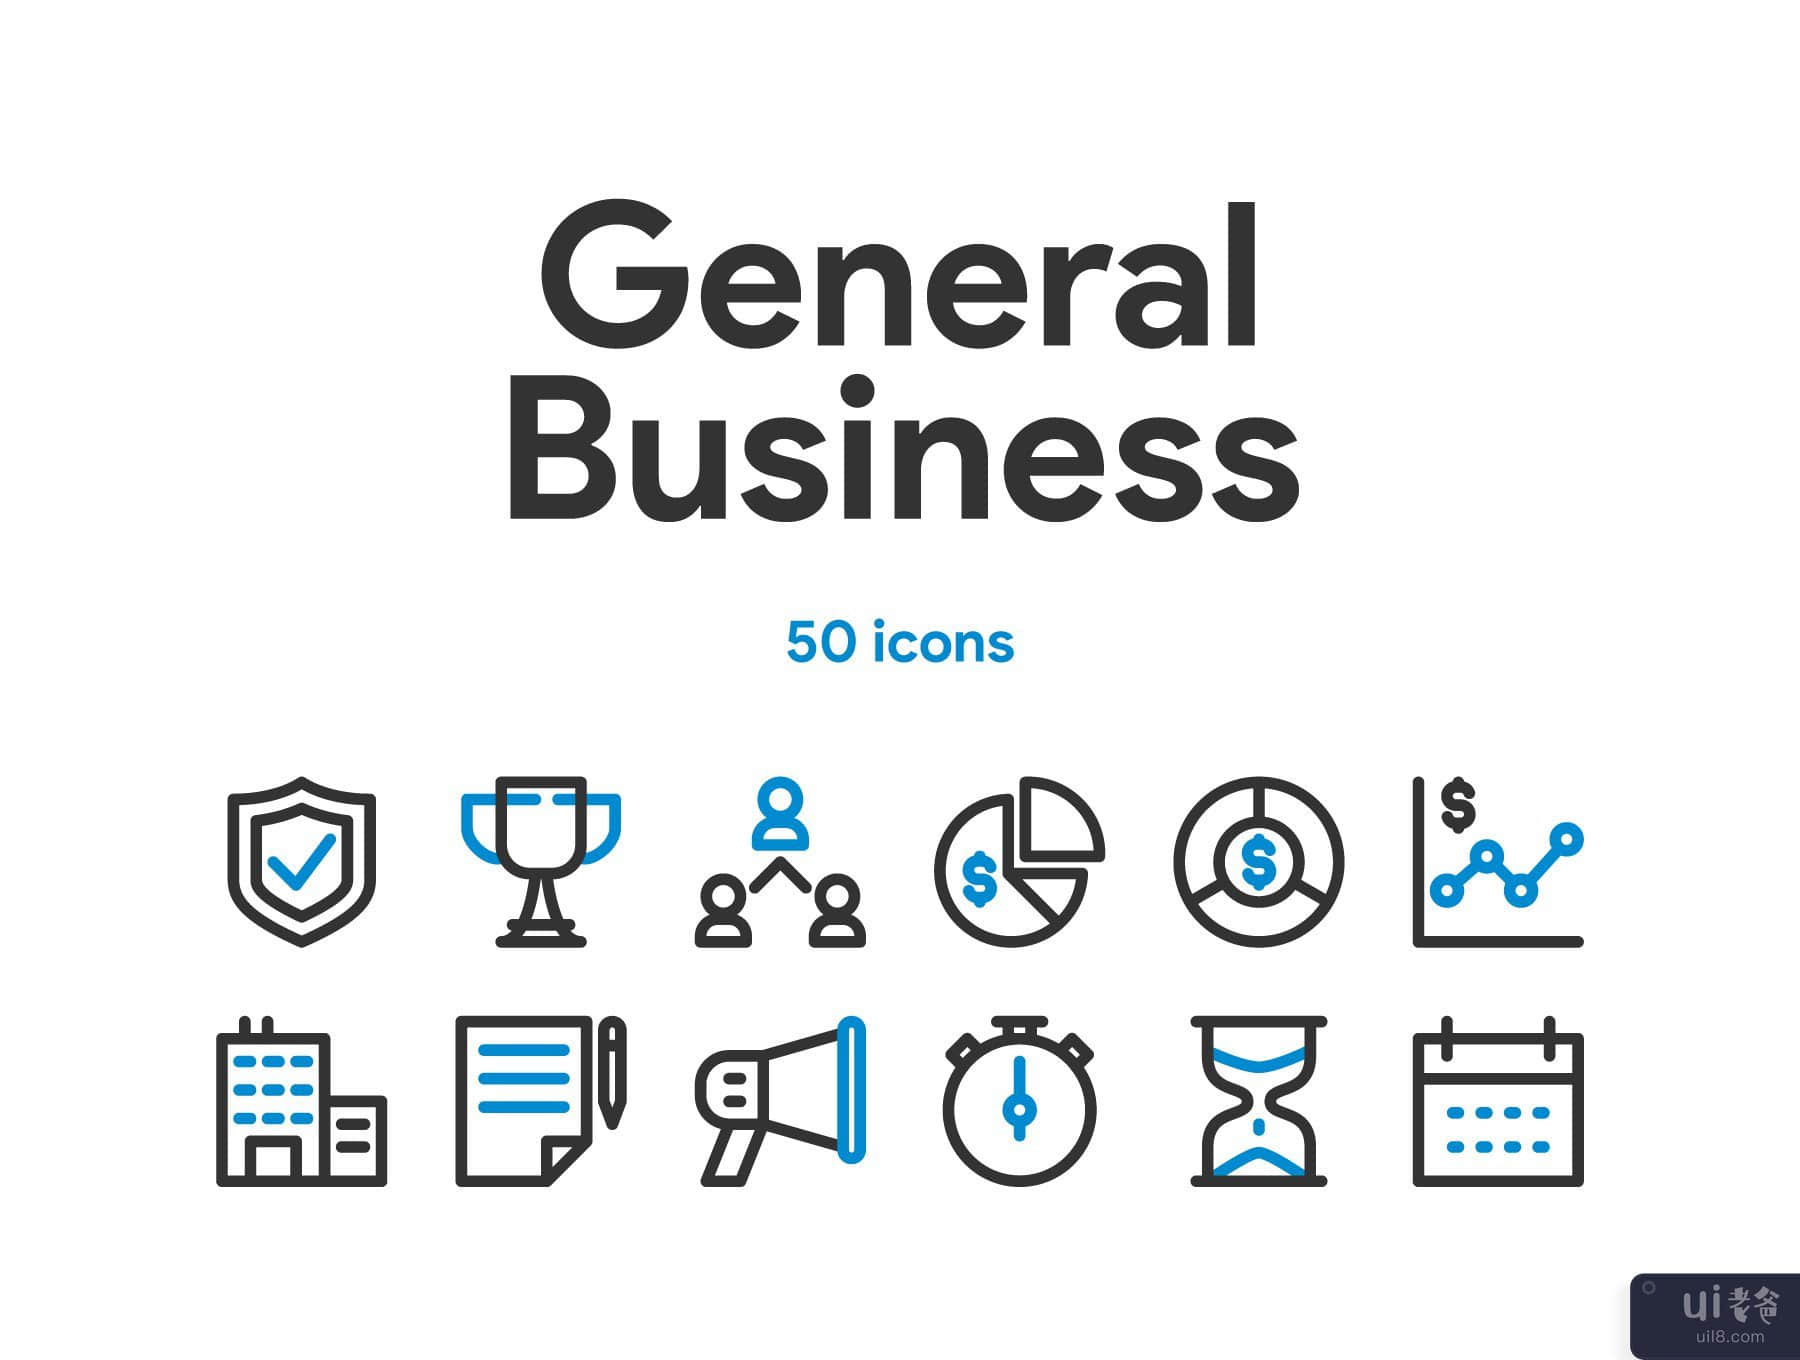 一般商业和金融图标集(General Business and Finance Icon Set)插图6